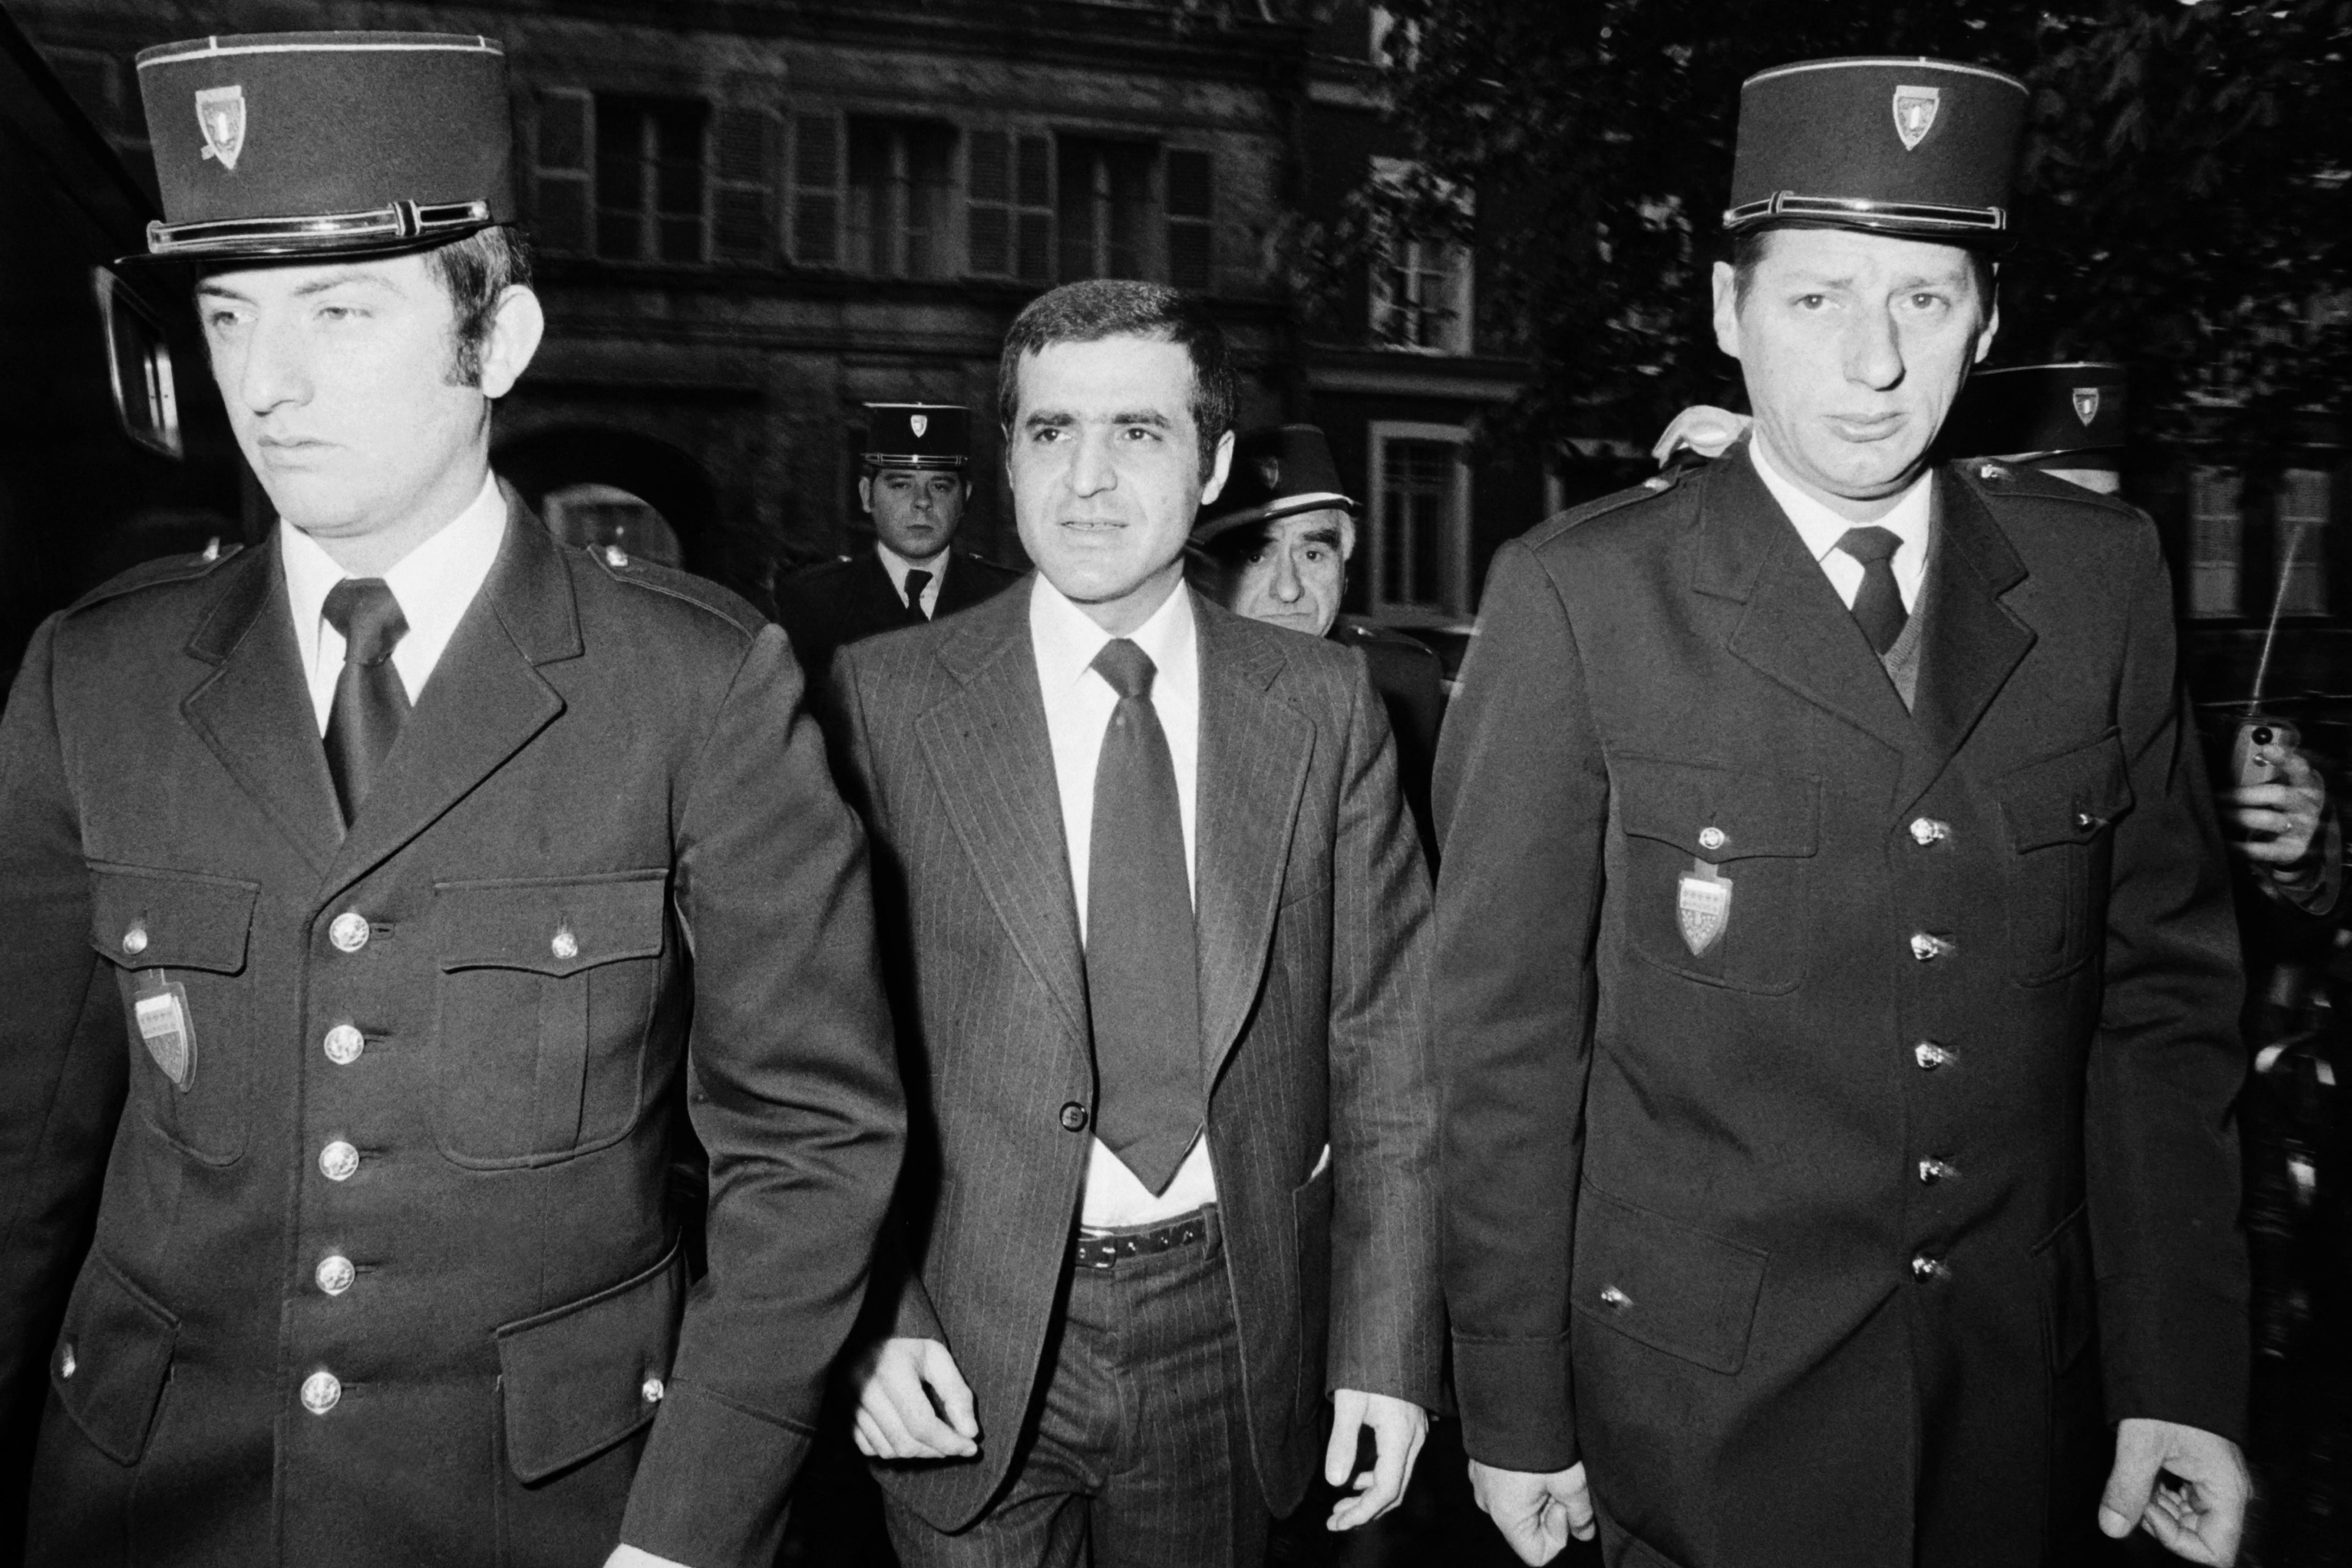 Pierre Goldman arrive au palais de Justice d'Amiens, encadré par des gendarmes, au sixième jour de son procès devant les assises de la Somme, le 3 mai 1976. Il sera acquitté le lendemain. AFP/archives